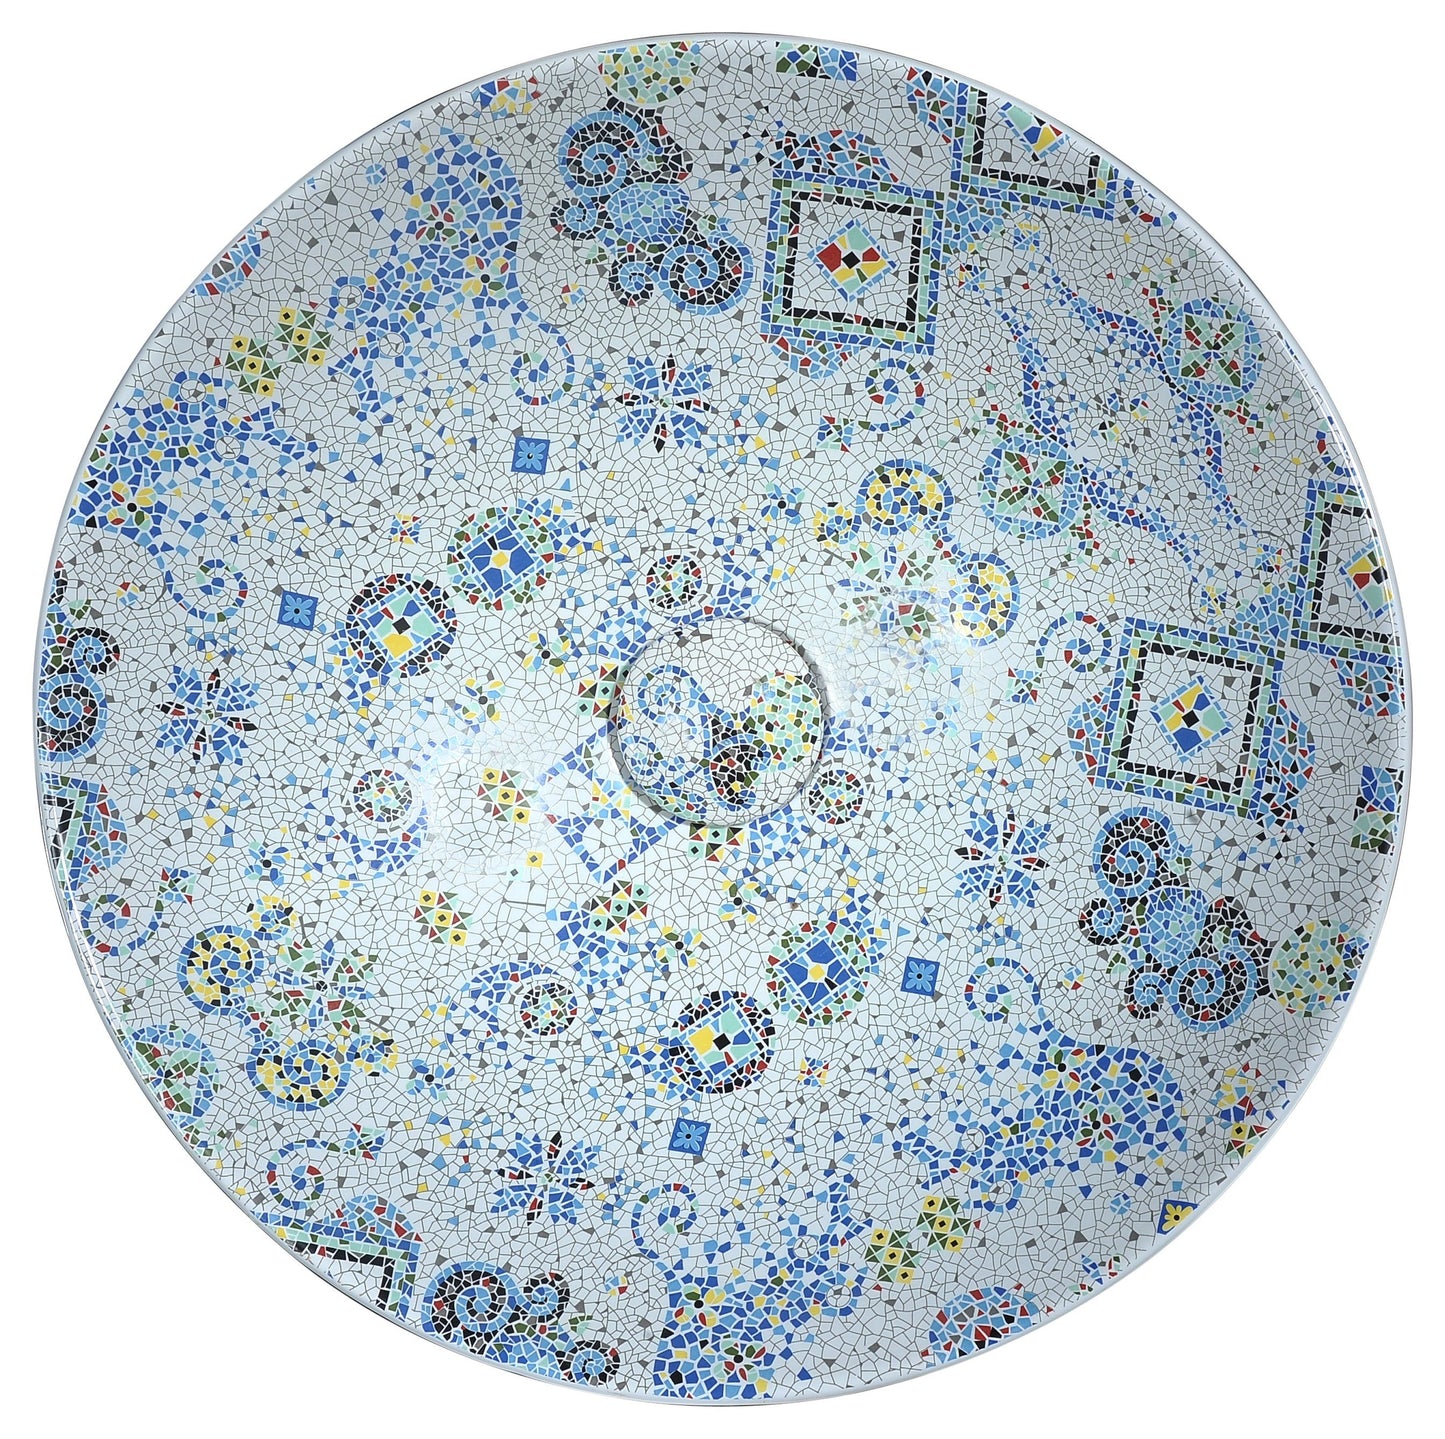 Byzantian Series Ceramic Vessel Sink in Mosaic White - Luxe Bathroom Vanities